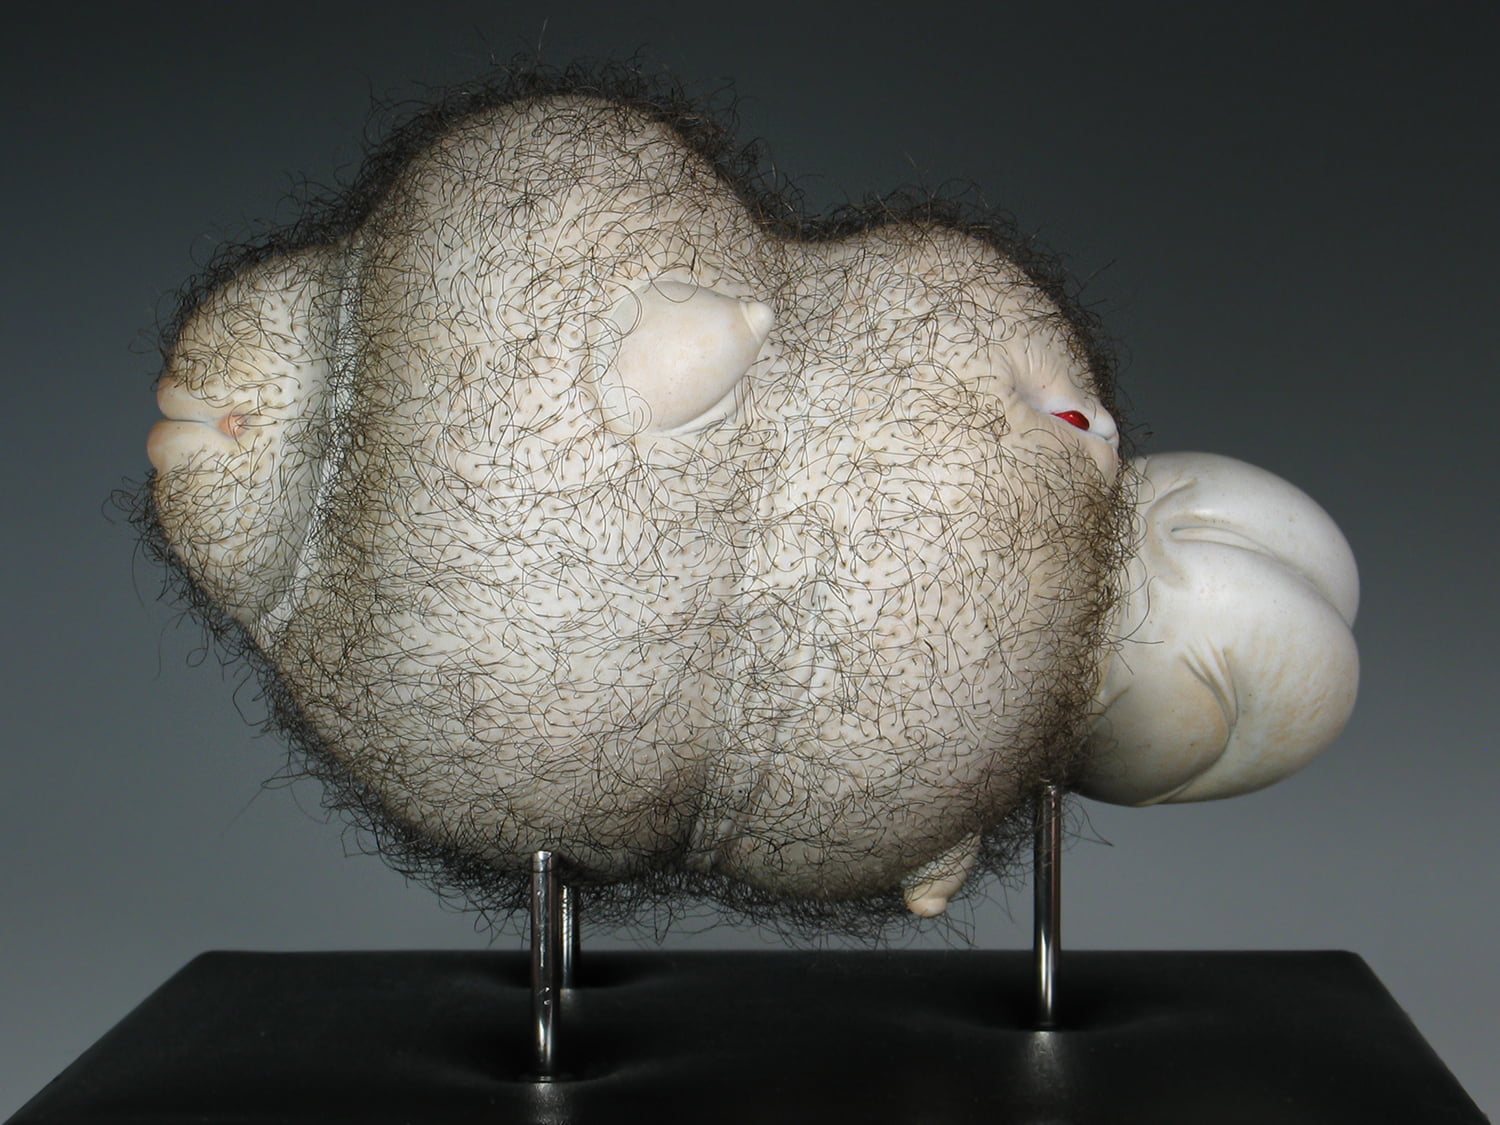 Jason Briggs "Puff". Porcelain and hair sculptural ceramic art.